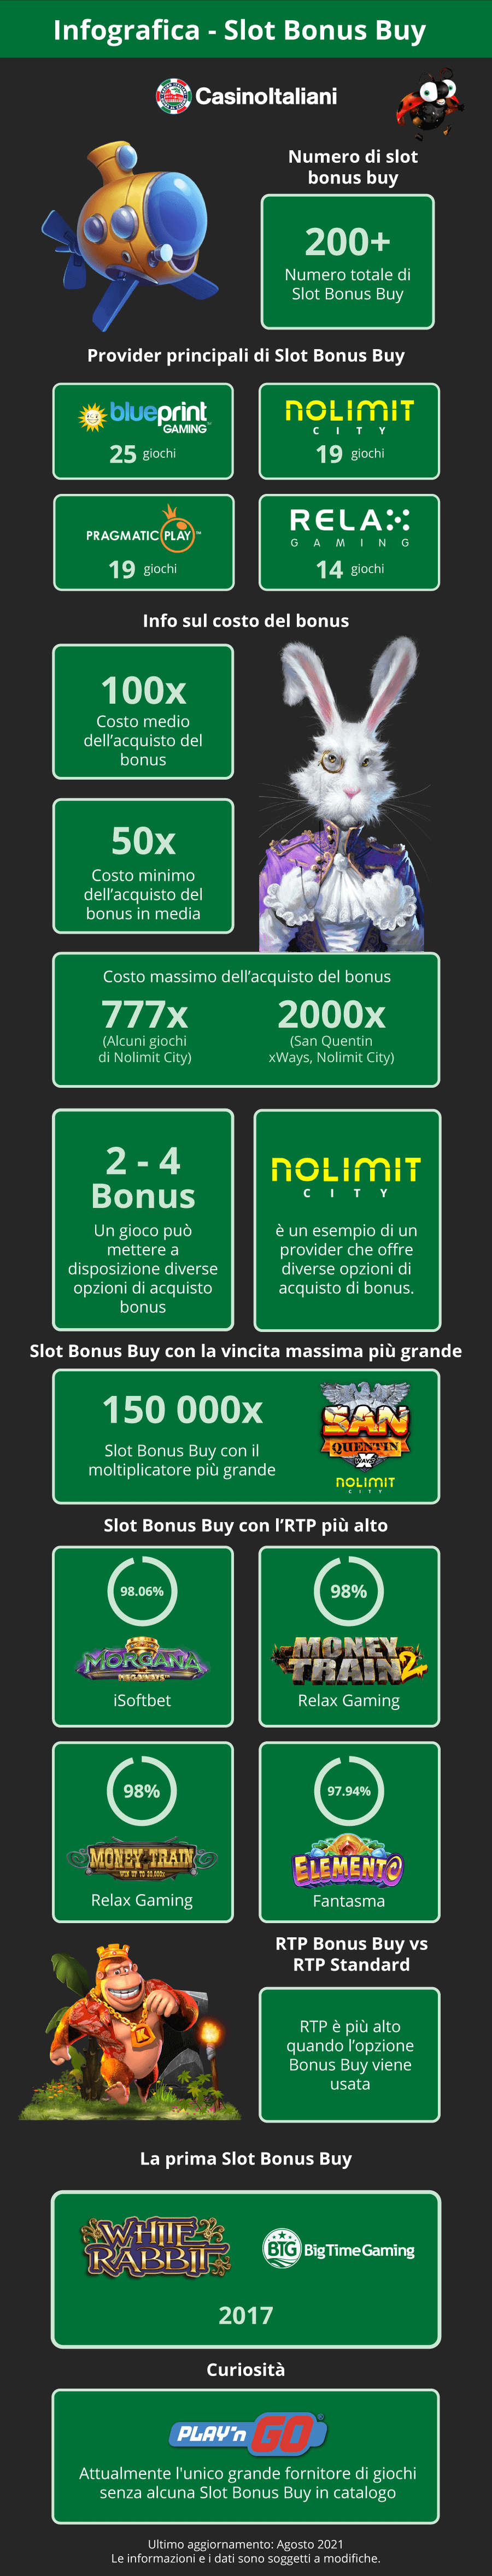 Infografica - Slot acquisto bonus